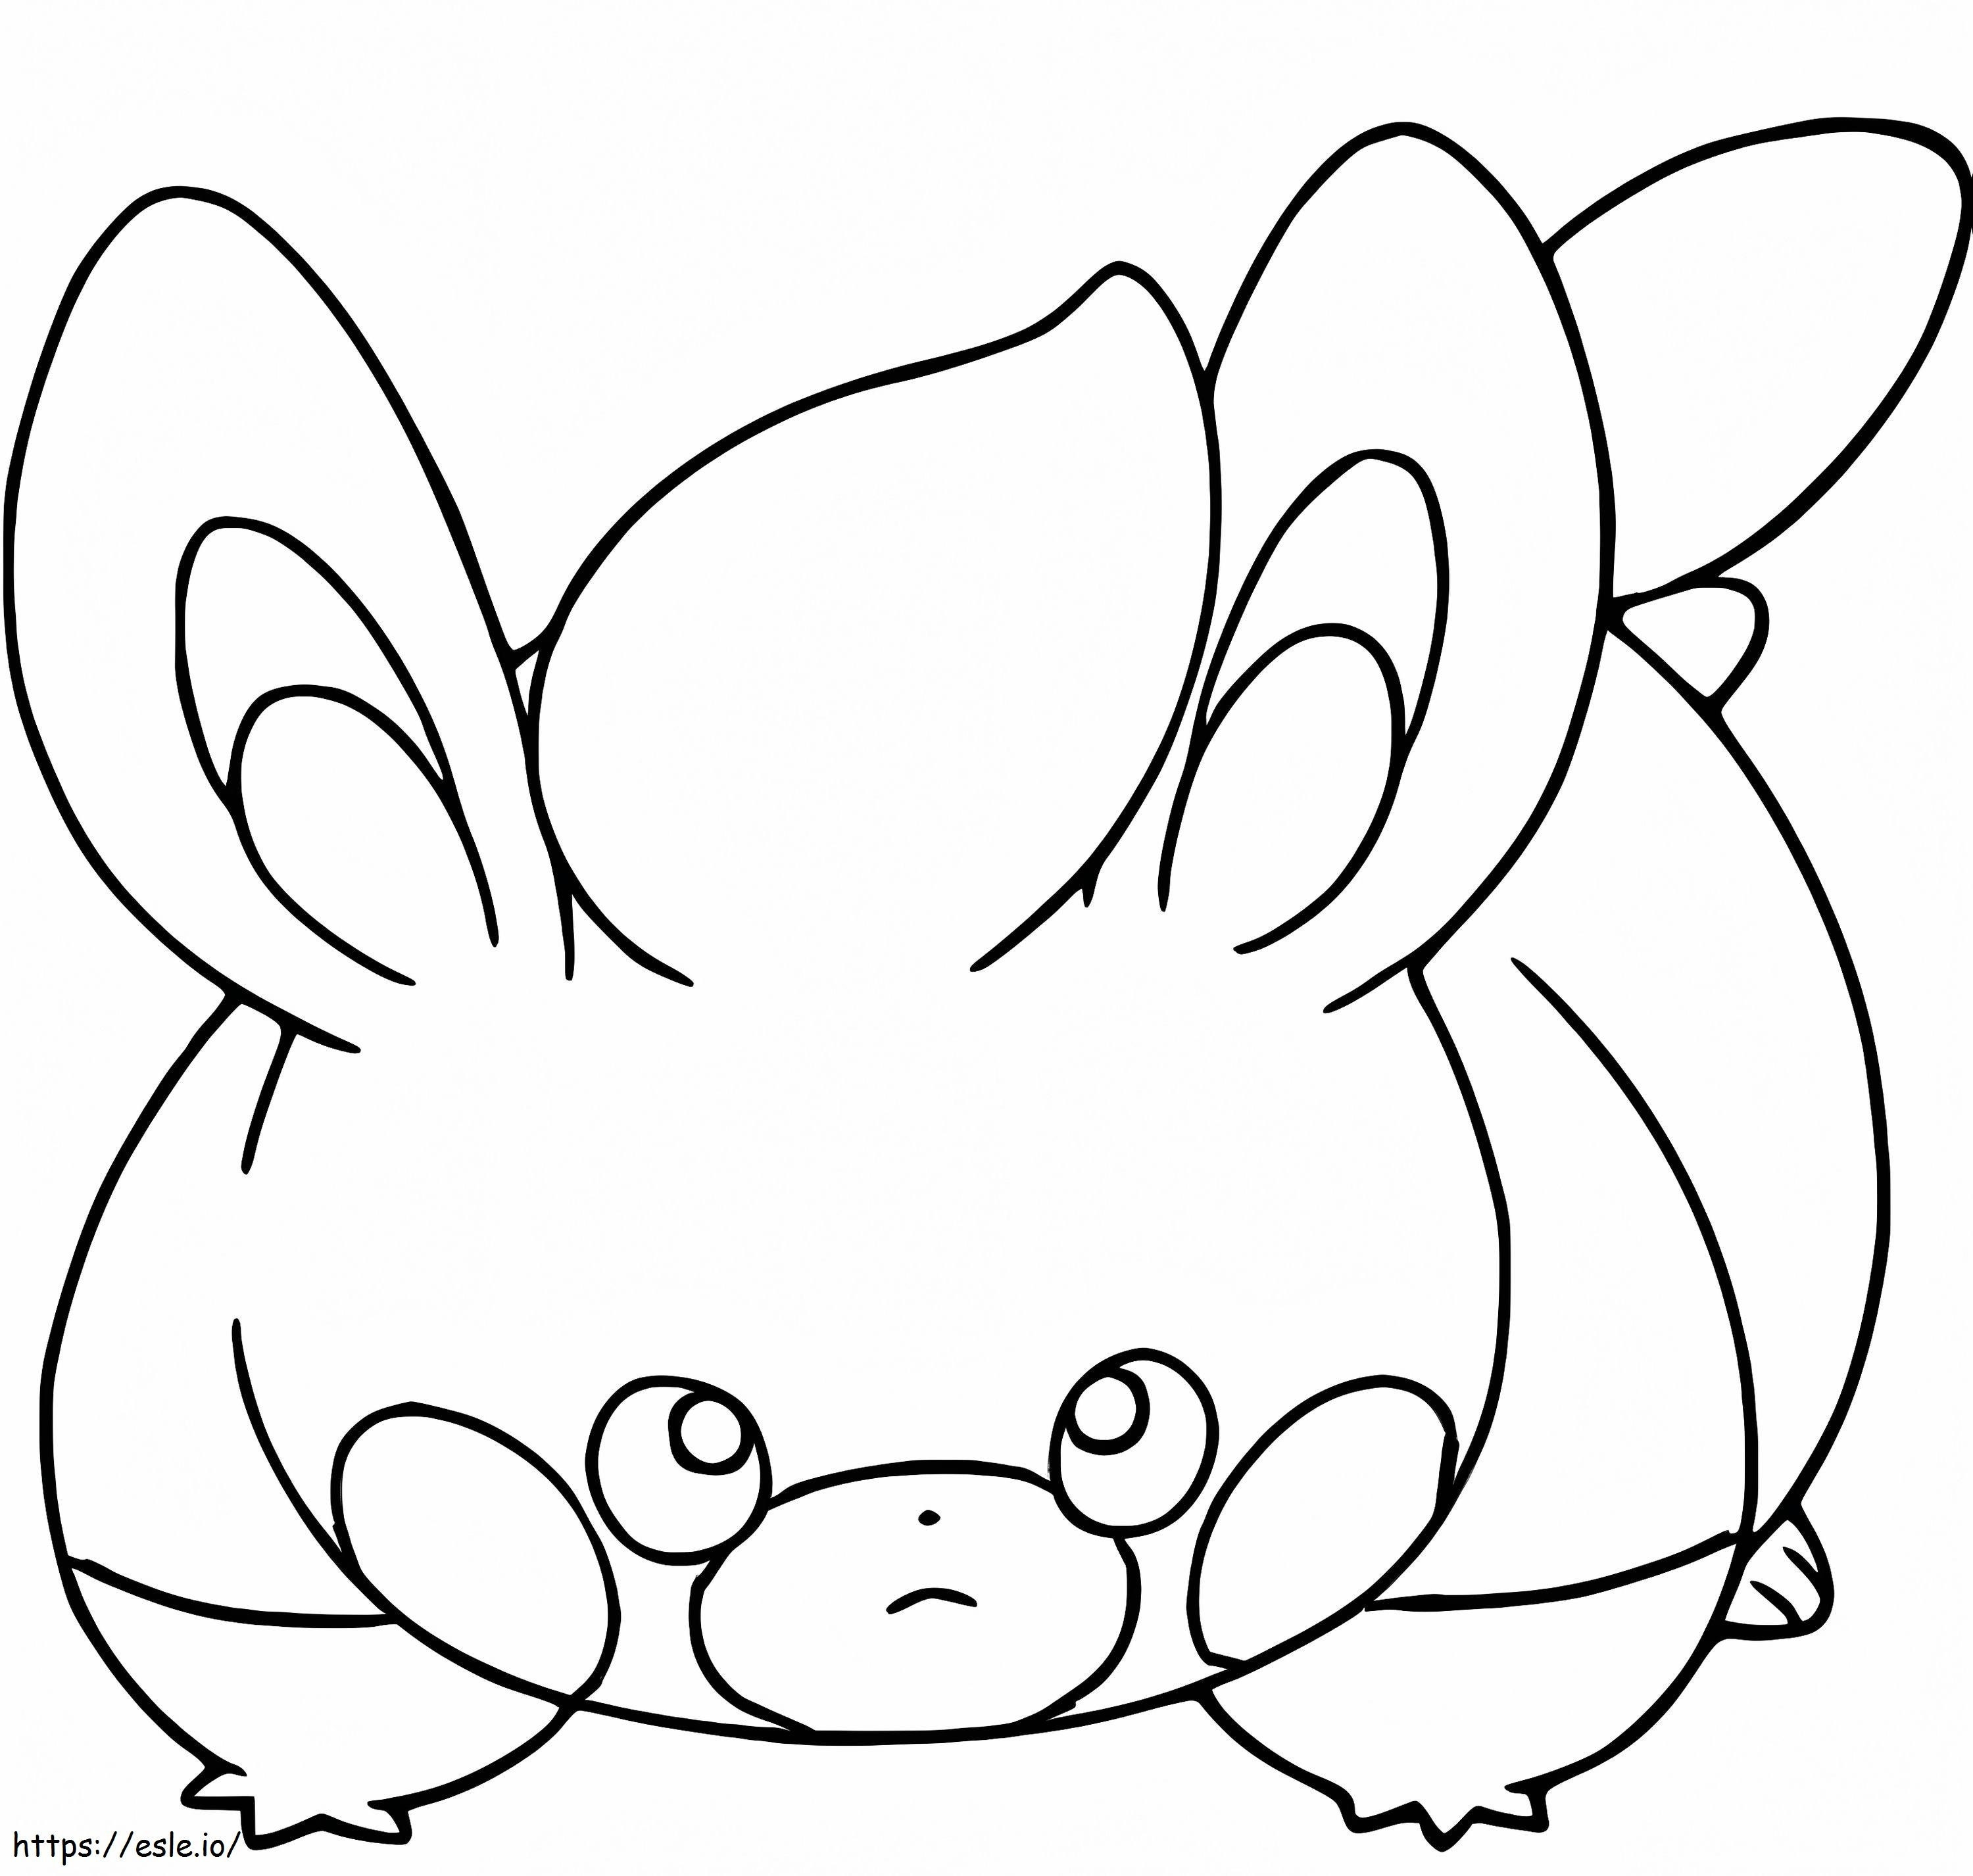 Coloriage Pokémon Pawmi à imprimer dessin